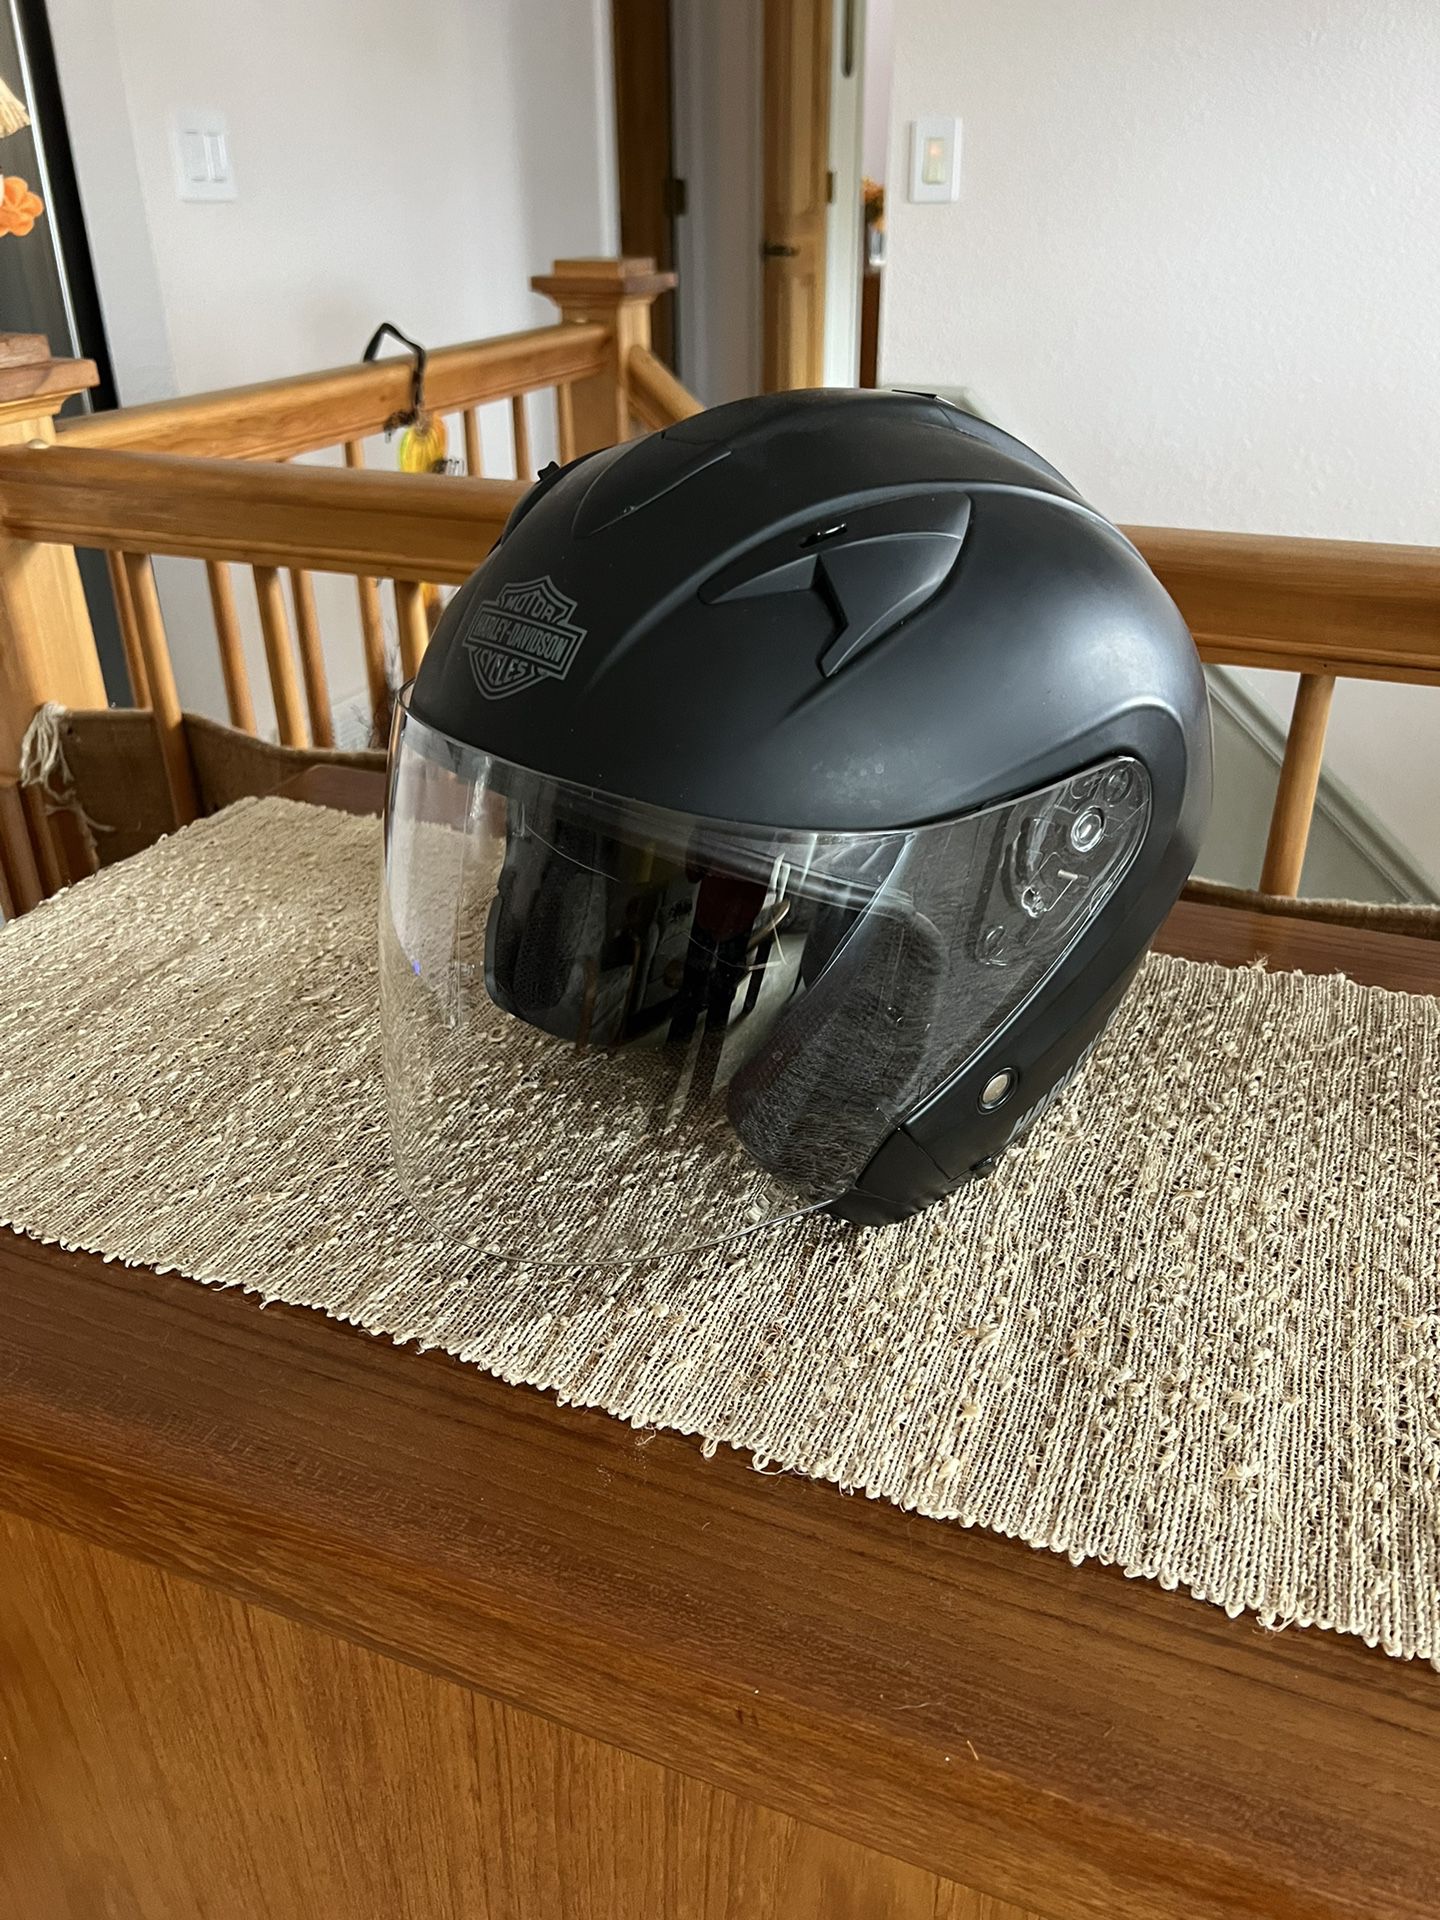 Harley Davidson Motorcycle Helmet.